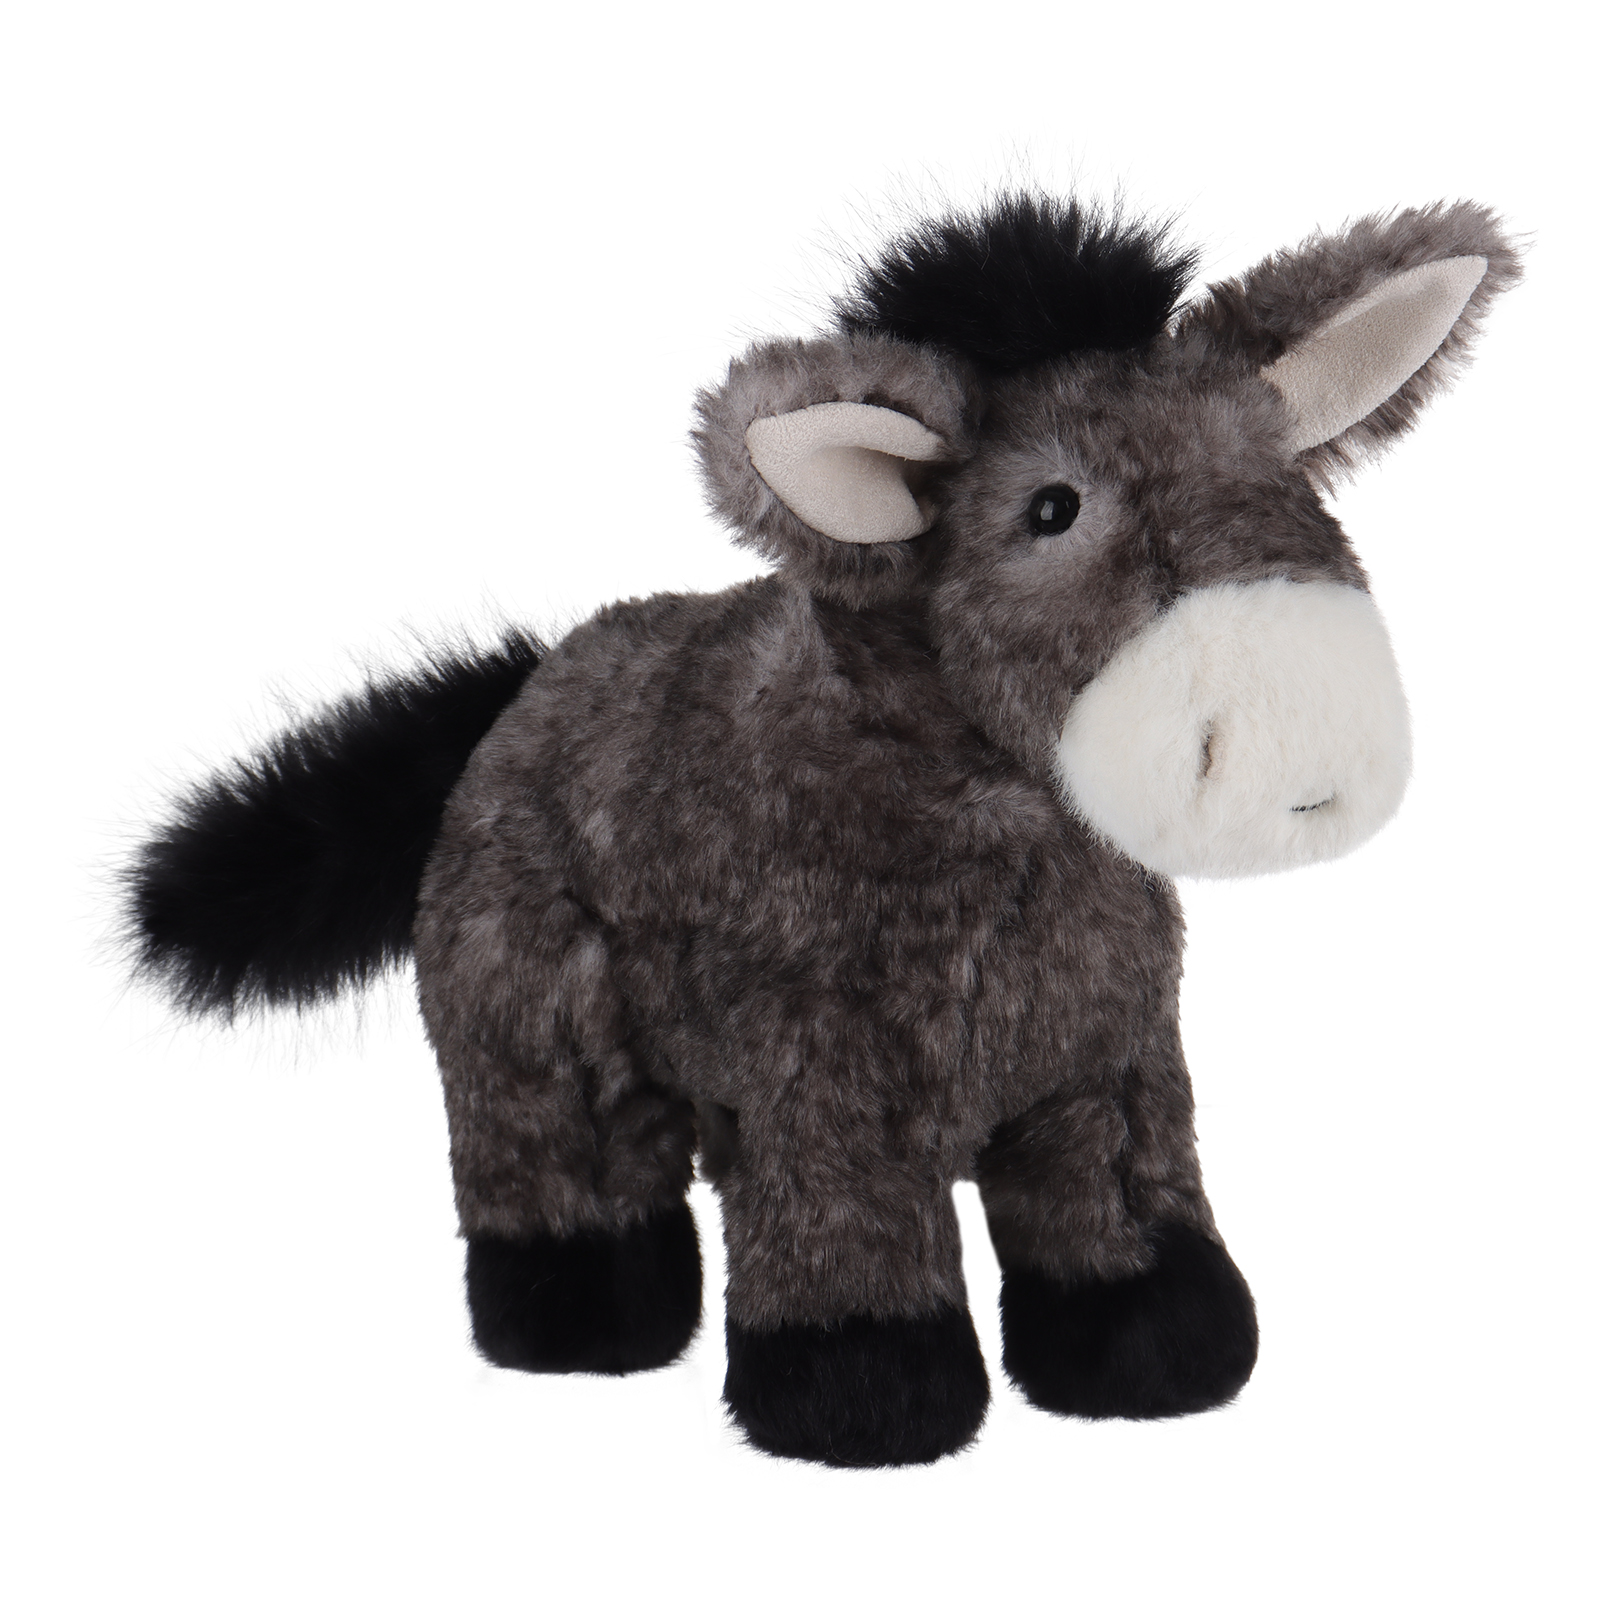 Apricot Lamb wild donkey Stuffed Animal Soft Plush Toys